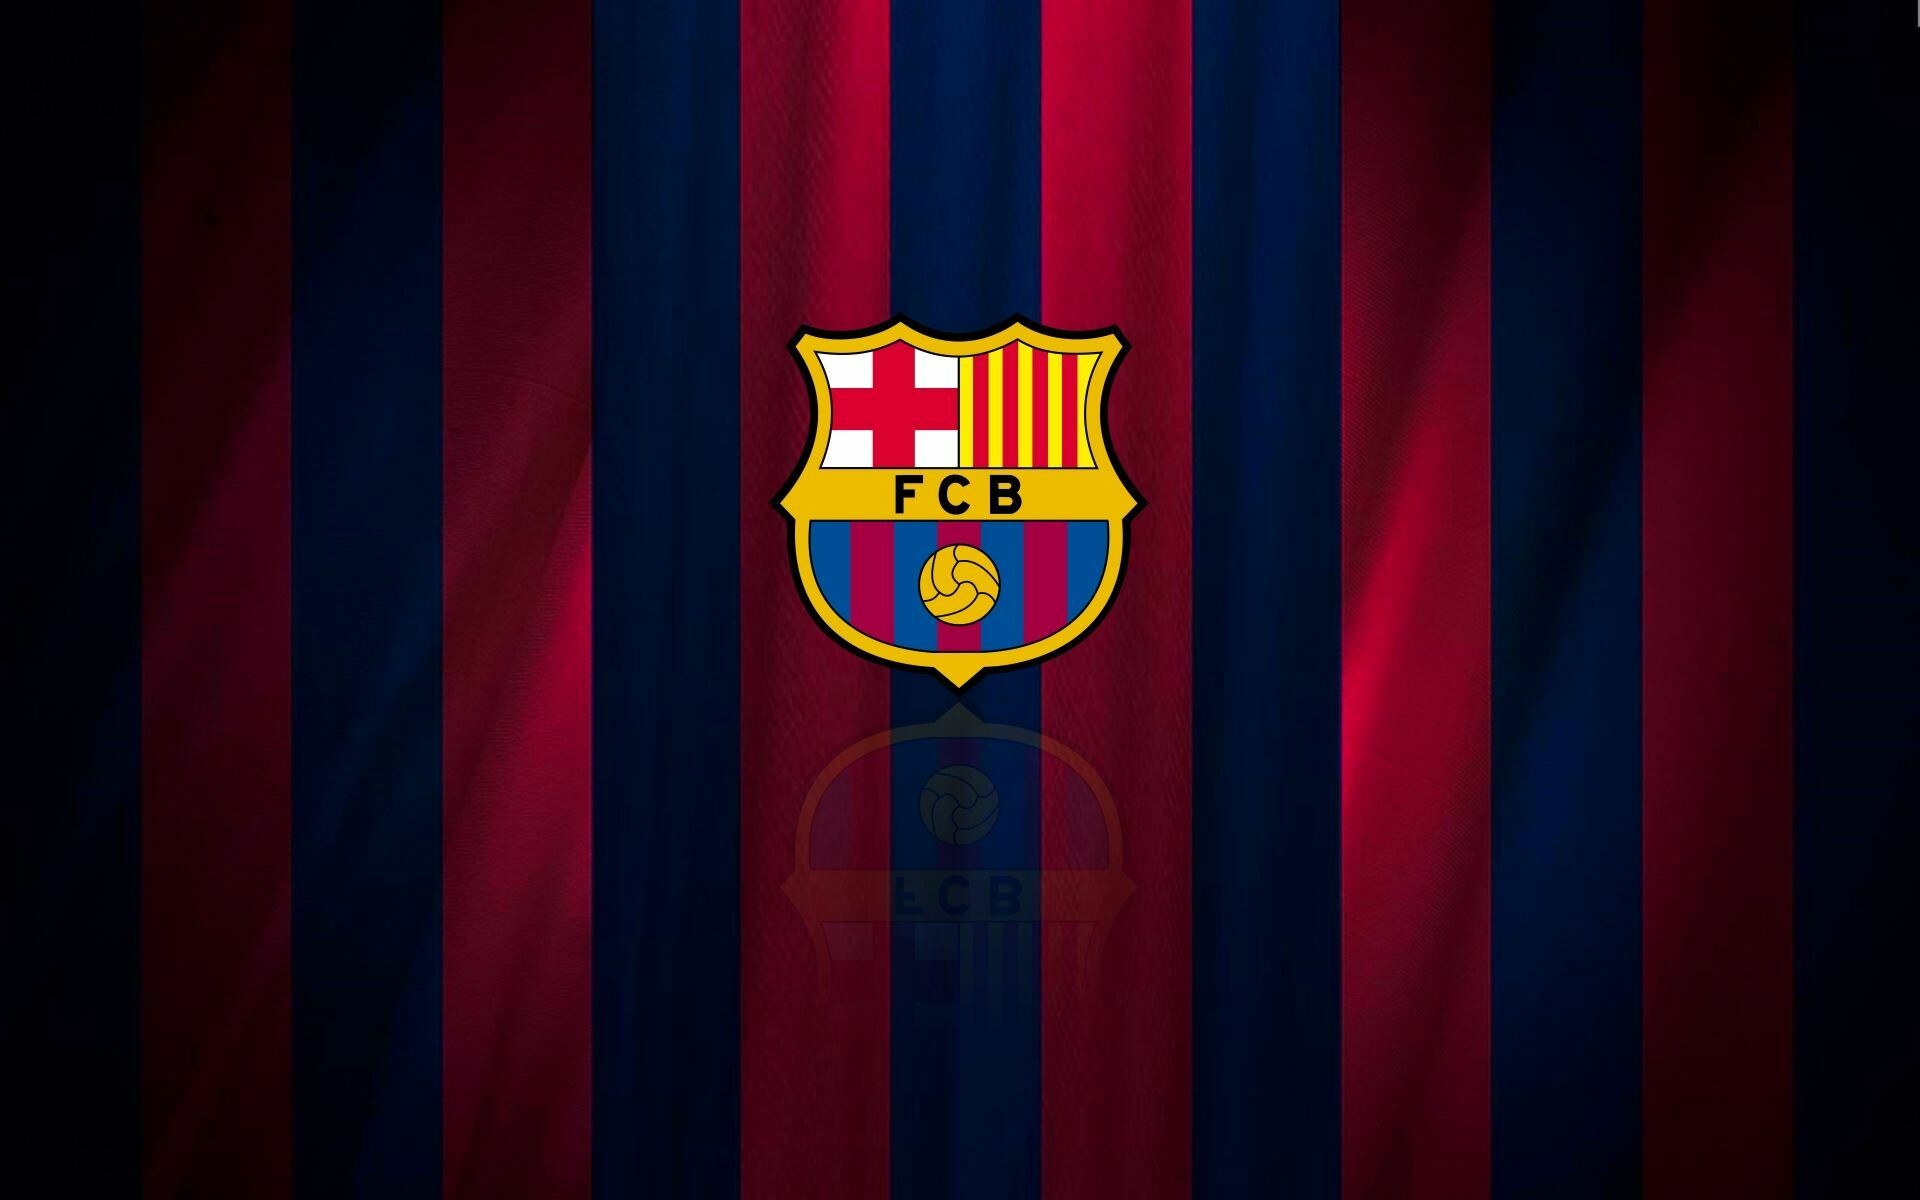 FC Barcelona: The current La Liga, Copa del Rey, Supercopa de Espana, UEFA Champions Leagu champions. 1920x1200 HD Wallpaper.